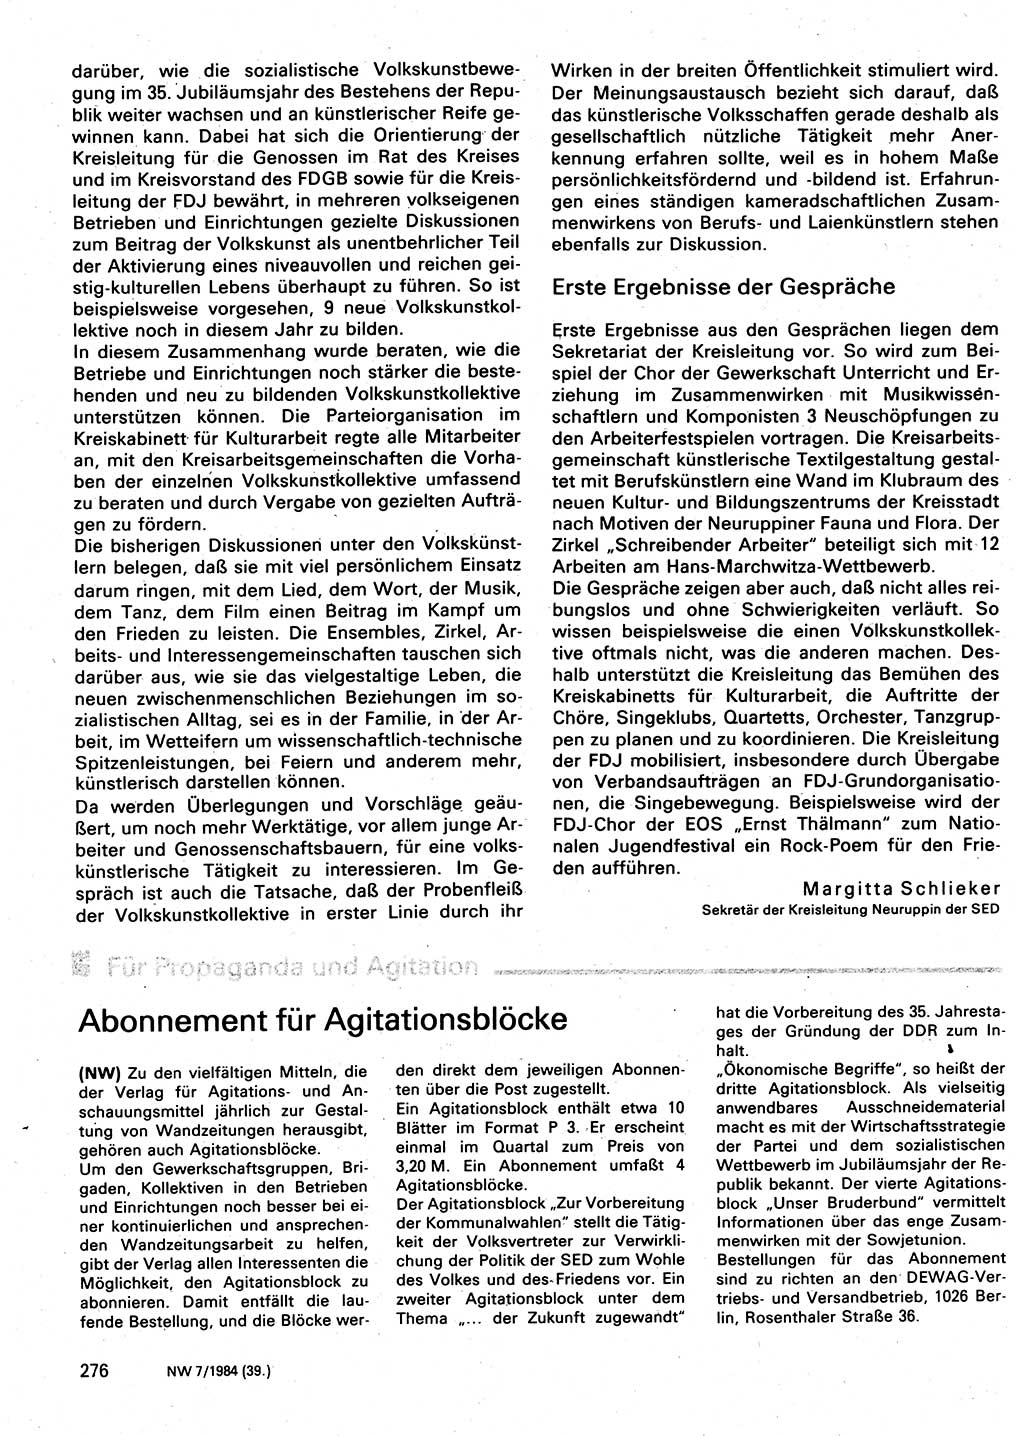 Neuer Weg (NW), Organ des Zentralkomitees (ZK) der SED (Sozialistische Einheitspartei Deutschlands) für Fragen des Parteilebens, 39. Jahrgang [Deutsche Demokratische Republik (DDR)] 1984, Seite 276 (NW ZK SED DDR 1984, S. 276)